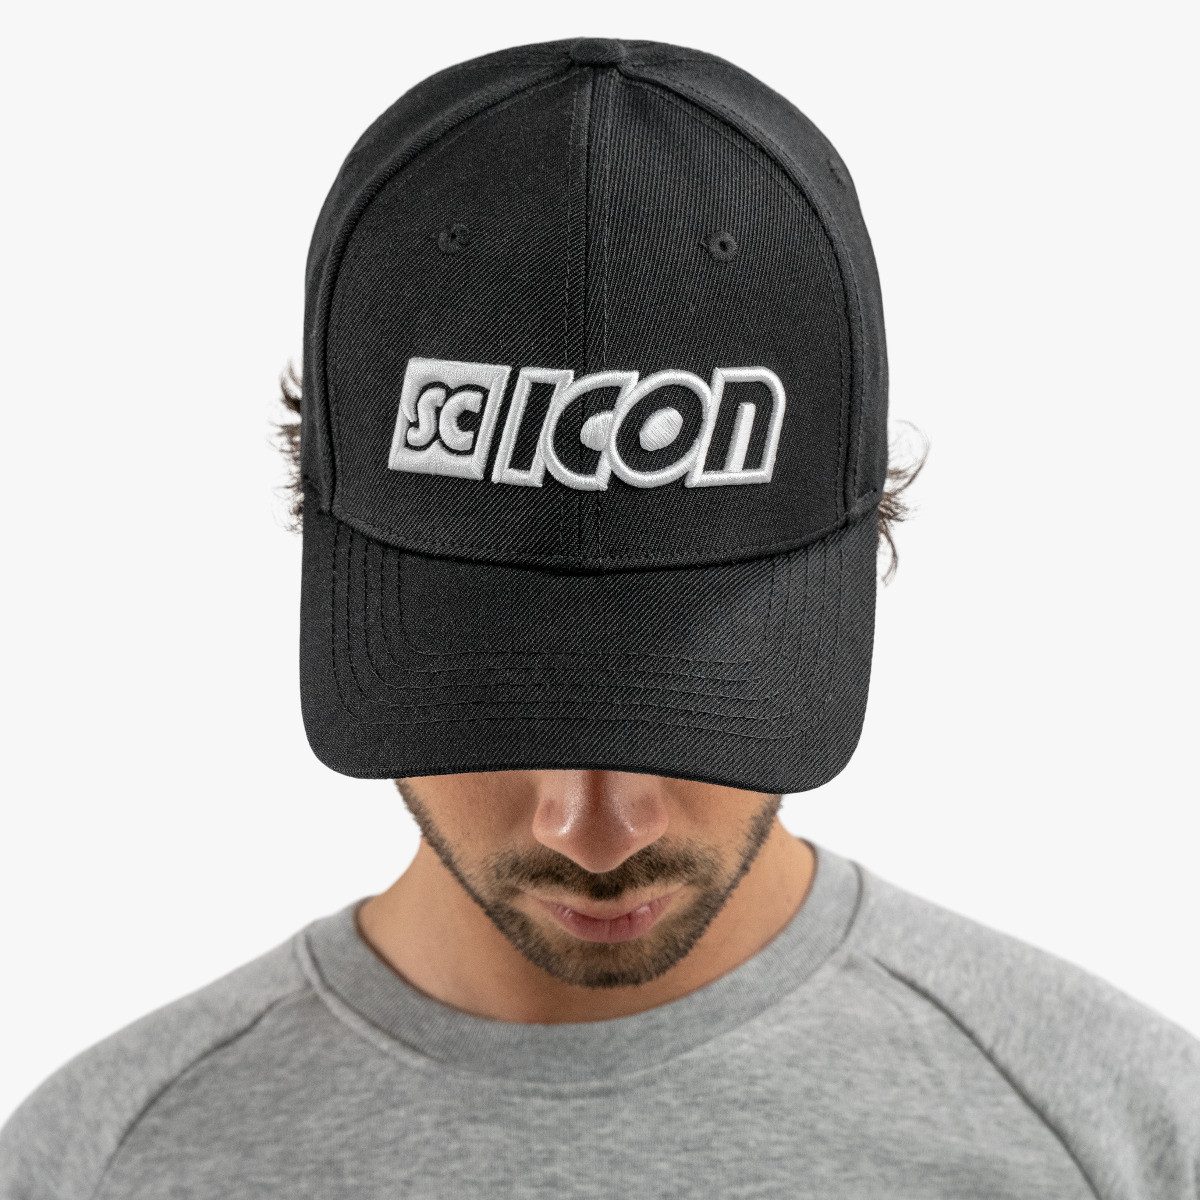 Specificitet Kammer flaskehals Black Scicon Logo Baseball Cap | Scicon Sports